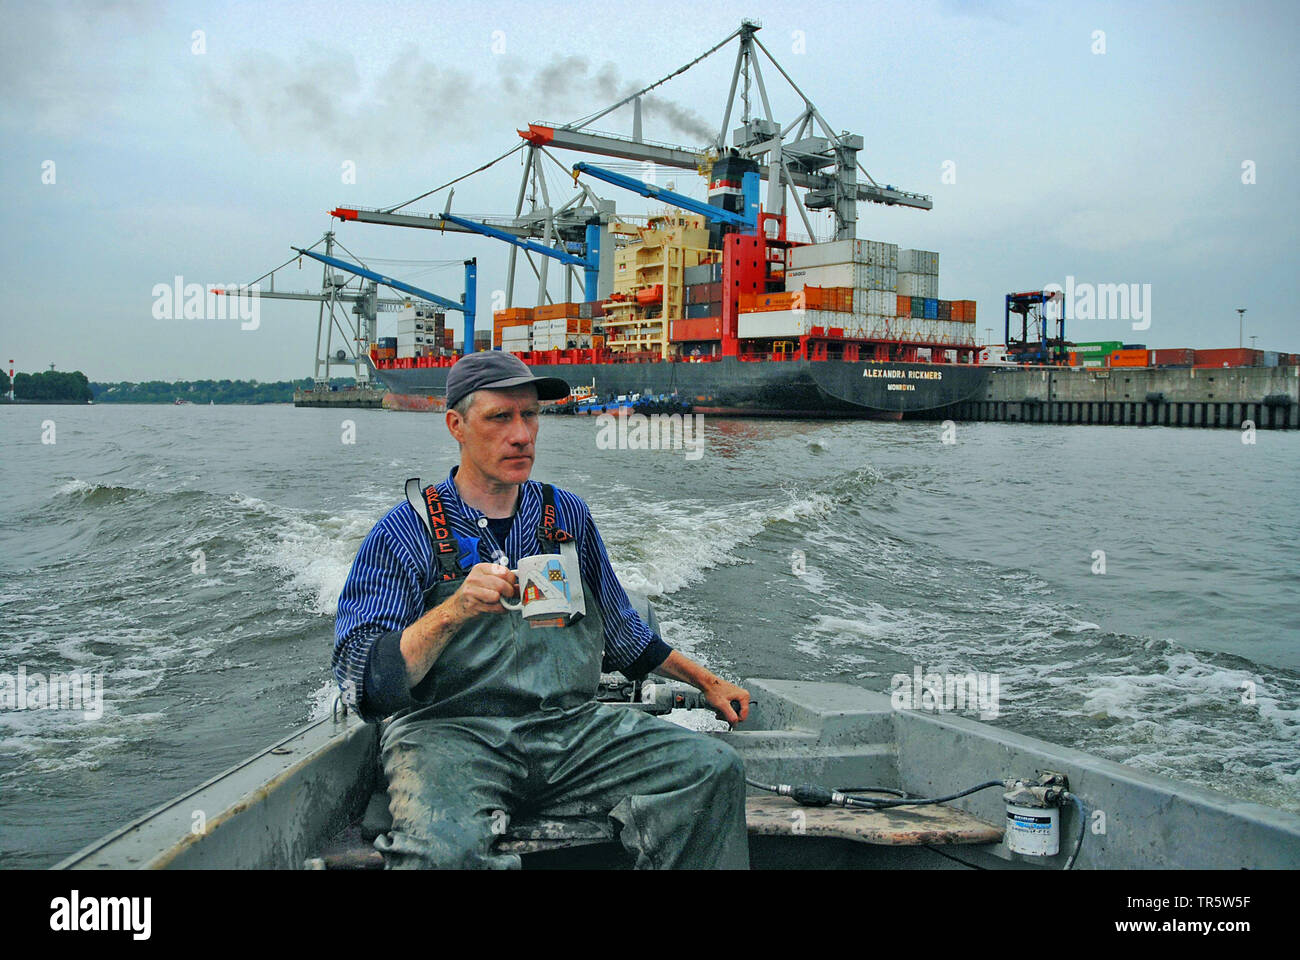 Fischerman en un barco de pesca en el río Elba en el puerto de Hamburgo, Alemania, Hamburgo Foto de stock